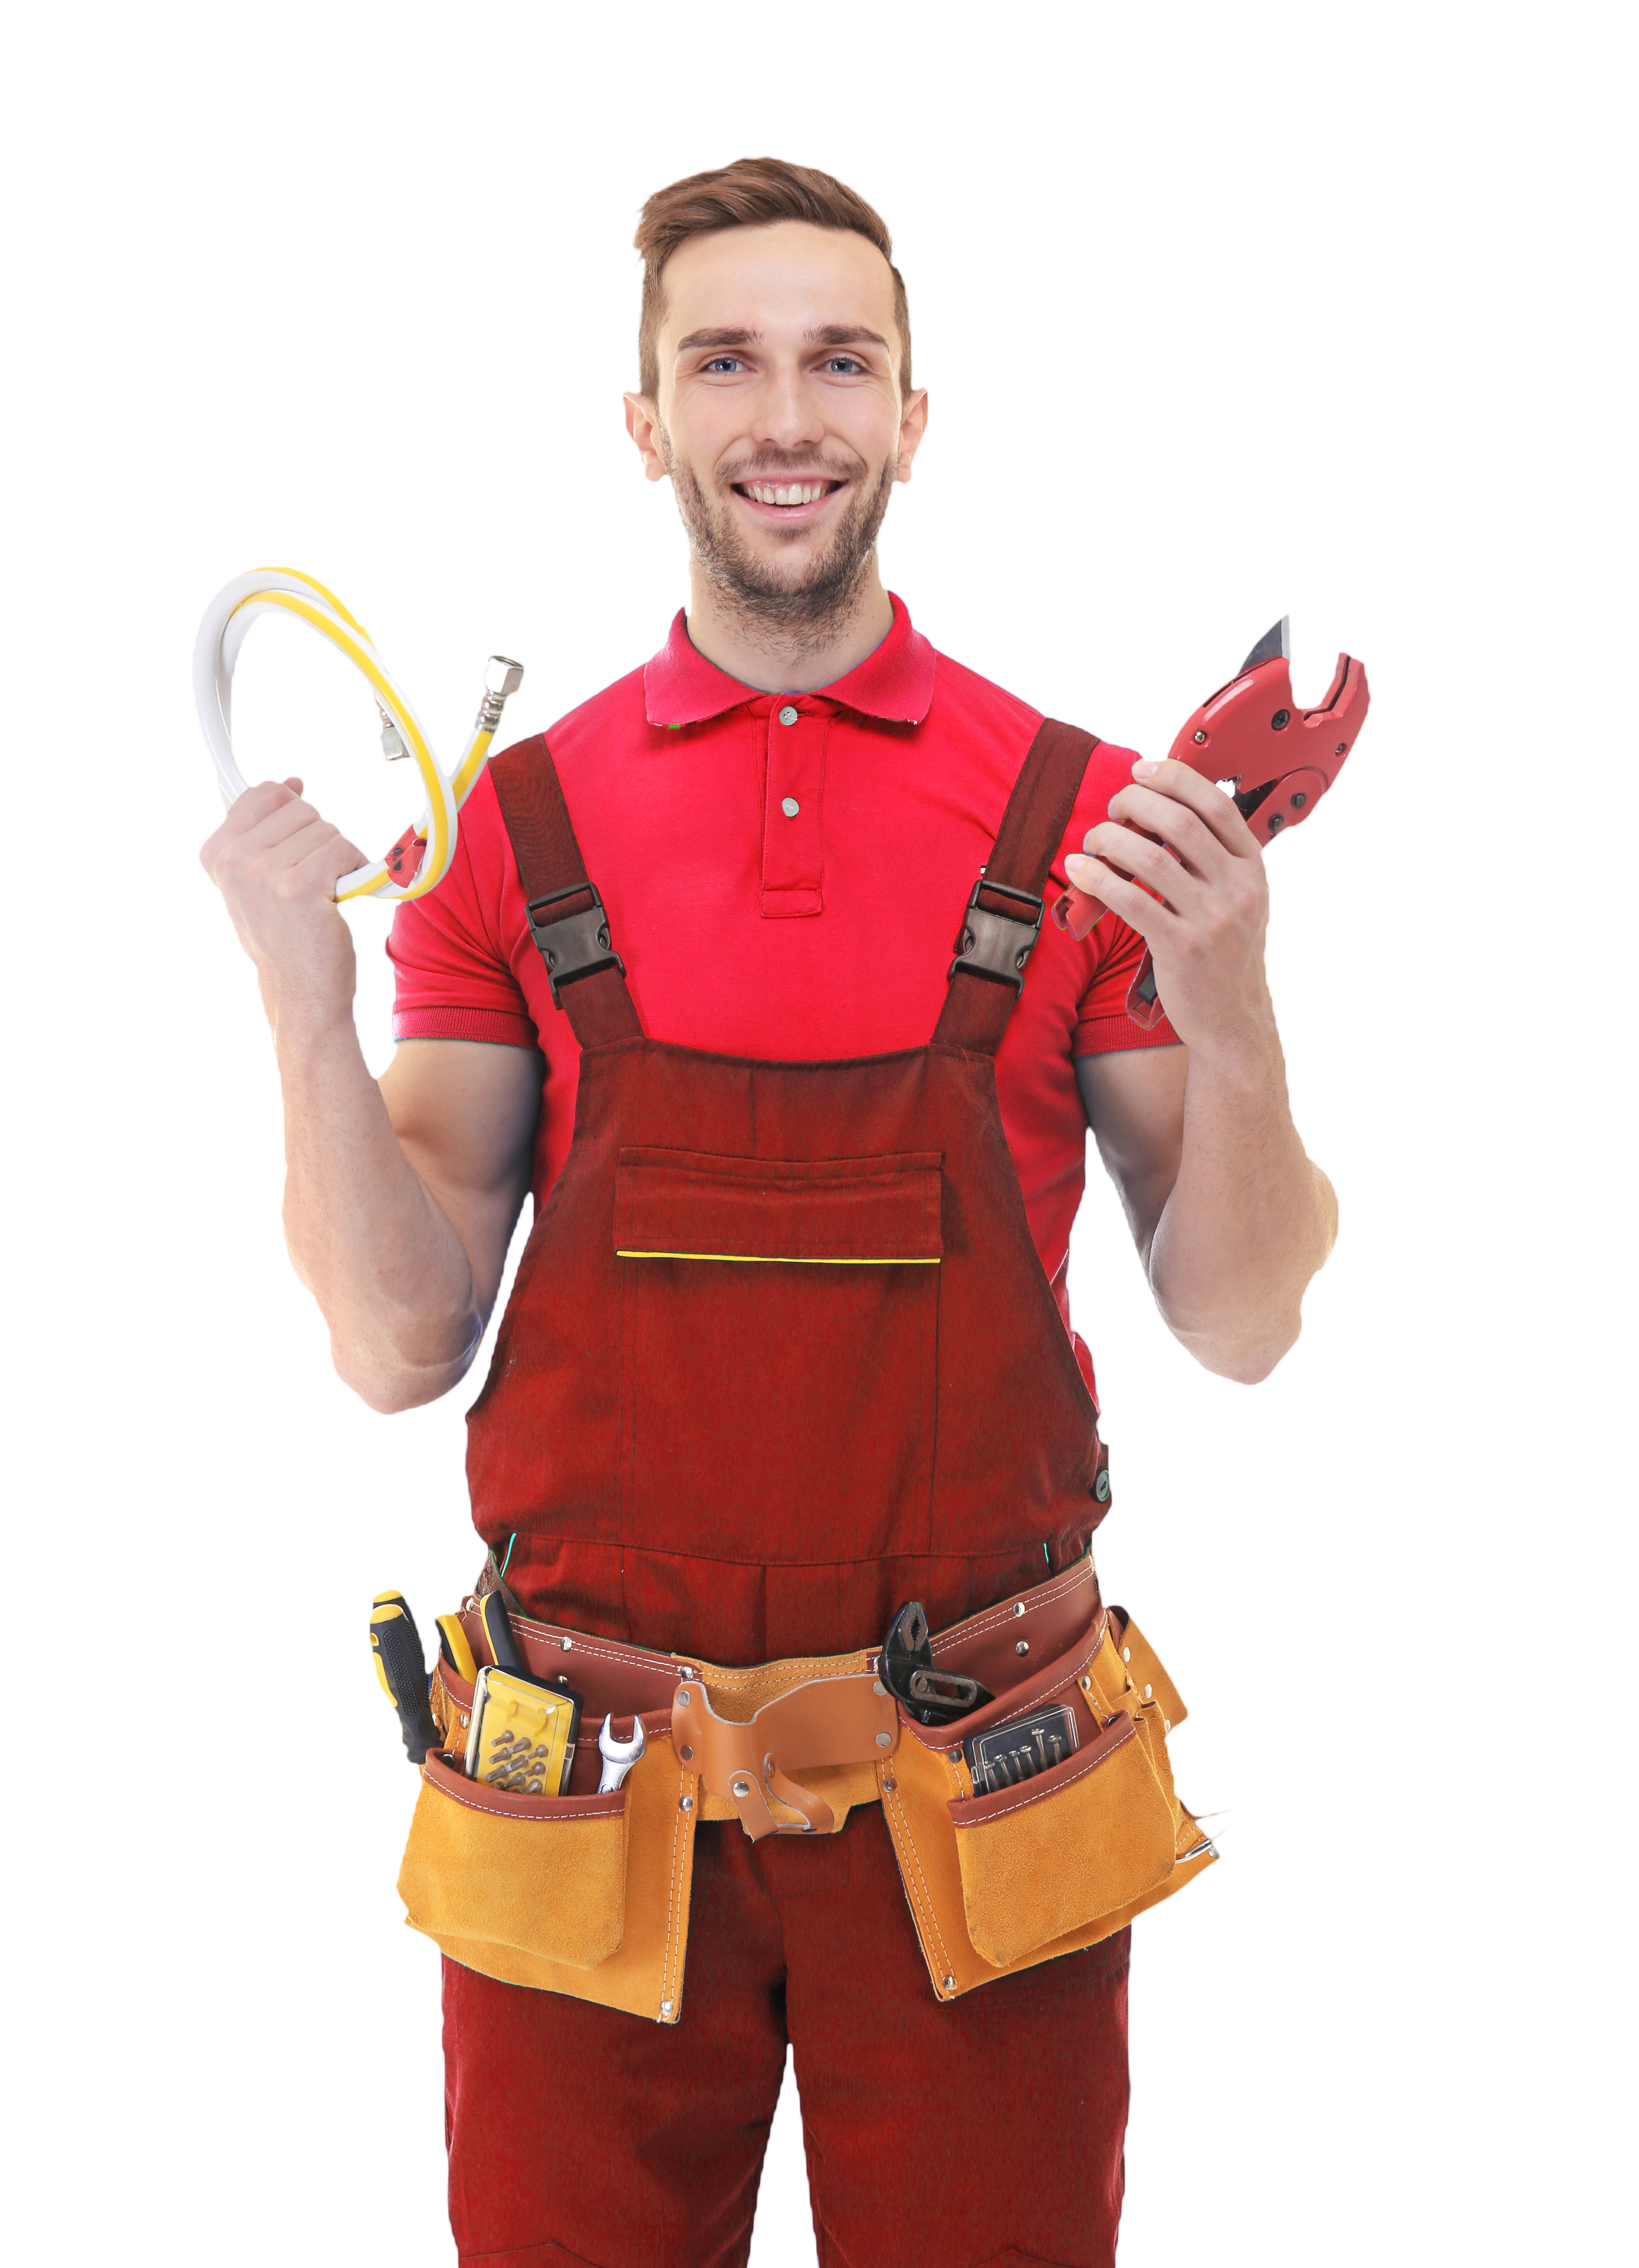 plumber-uniform-holding-tools-white-background